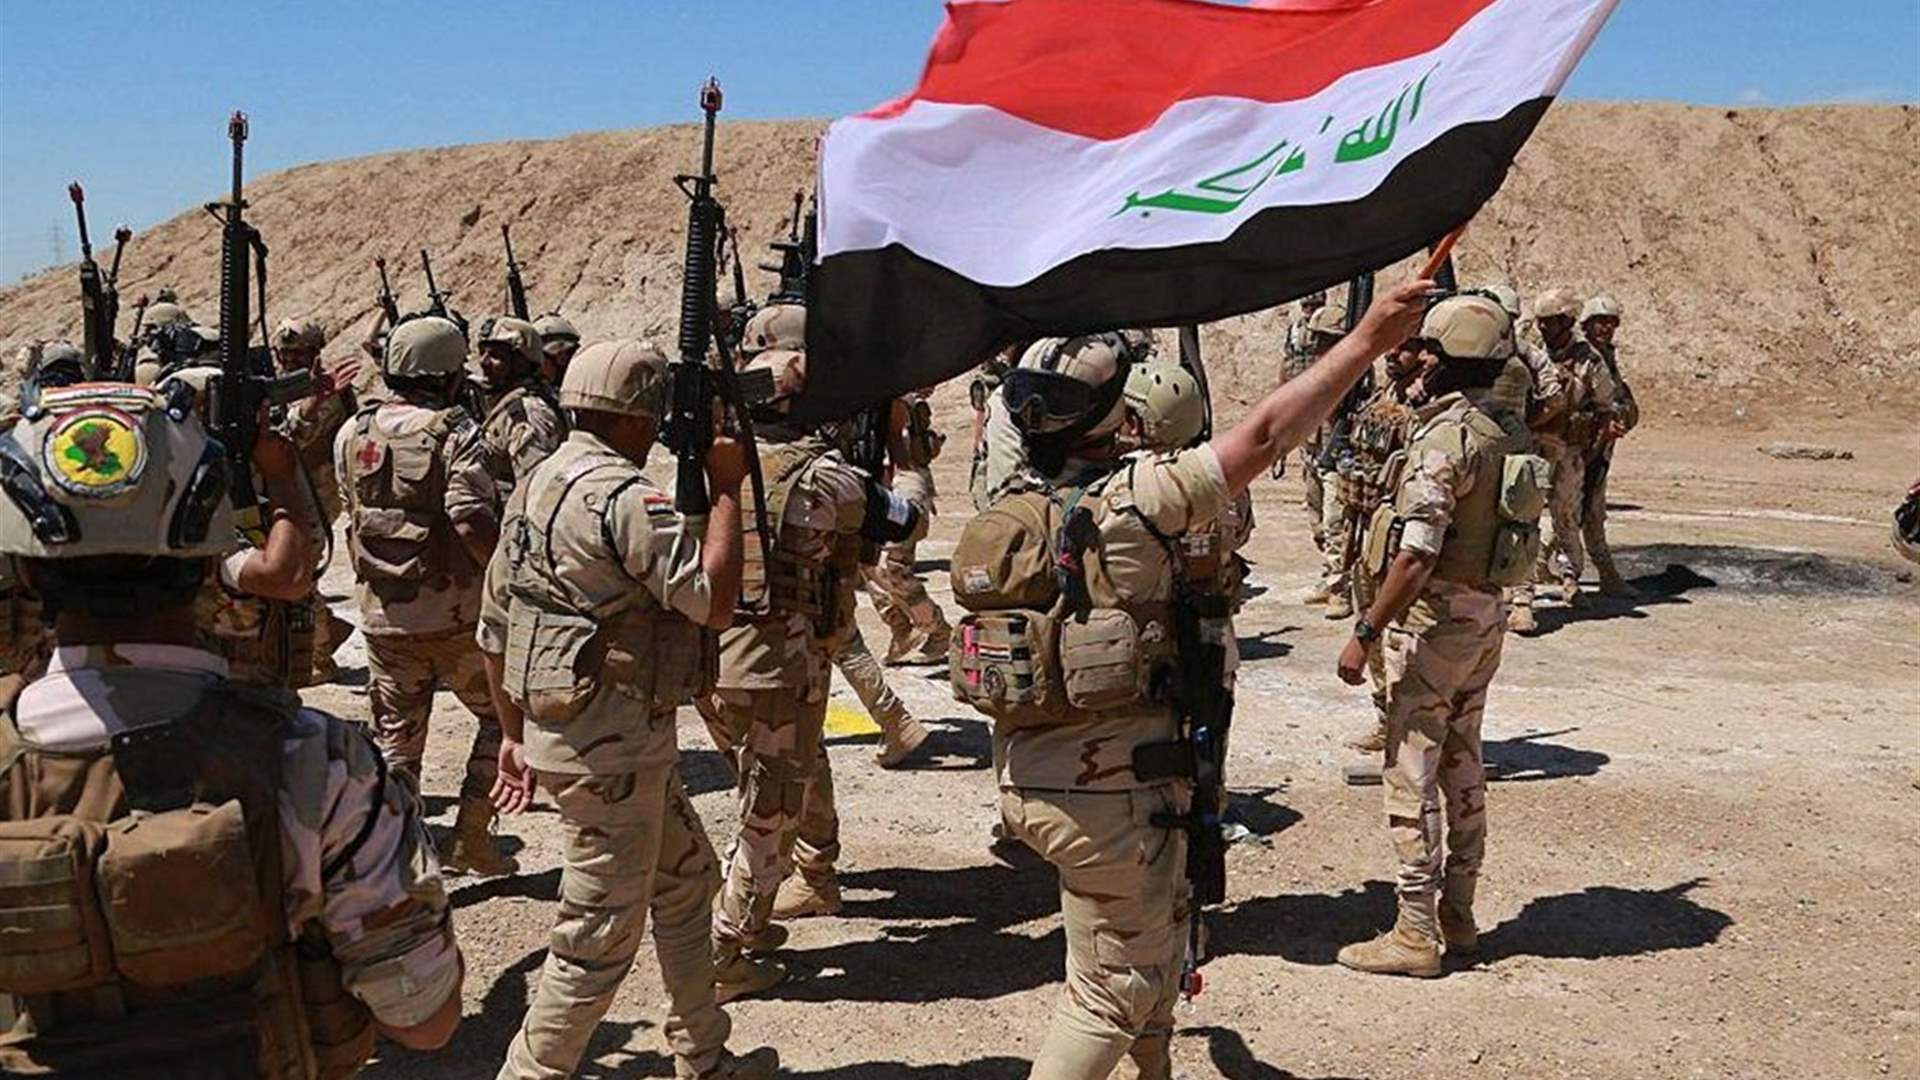 مقتل عناصر من القوات الأمنية في إقليم كردستان العراق بقصف طائرة مسيرة